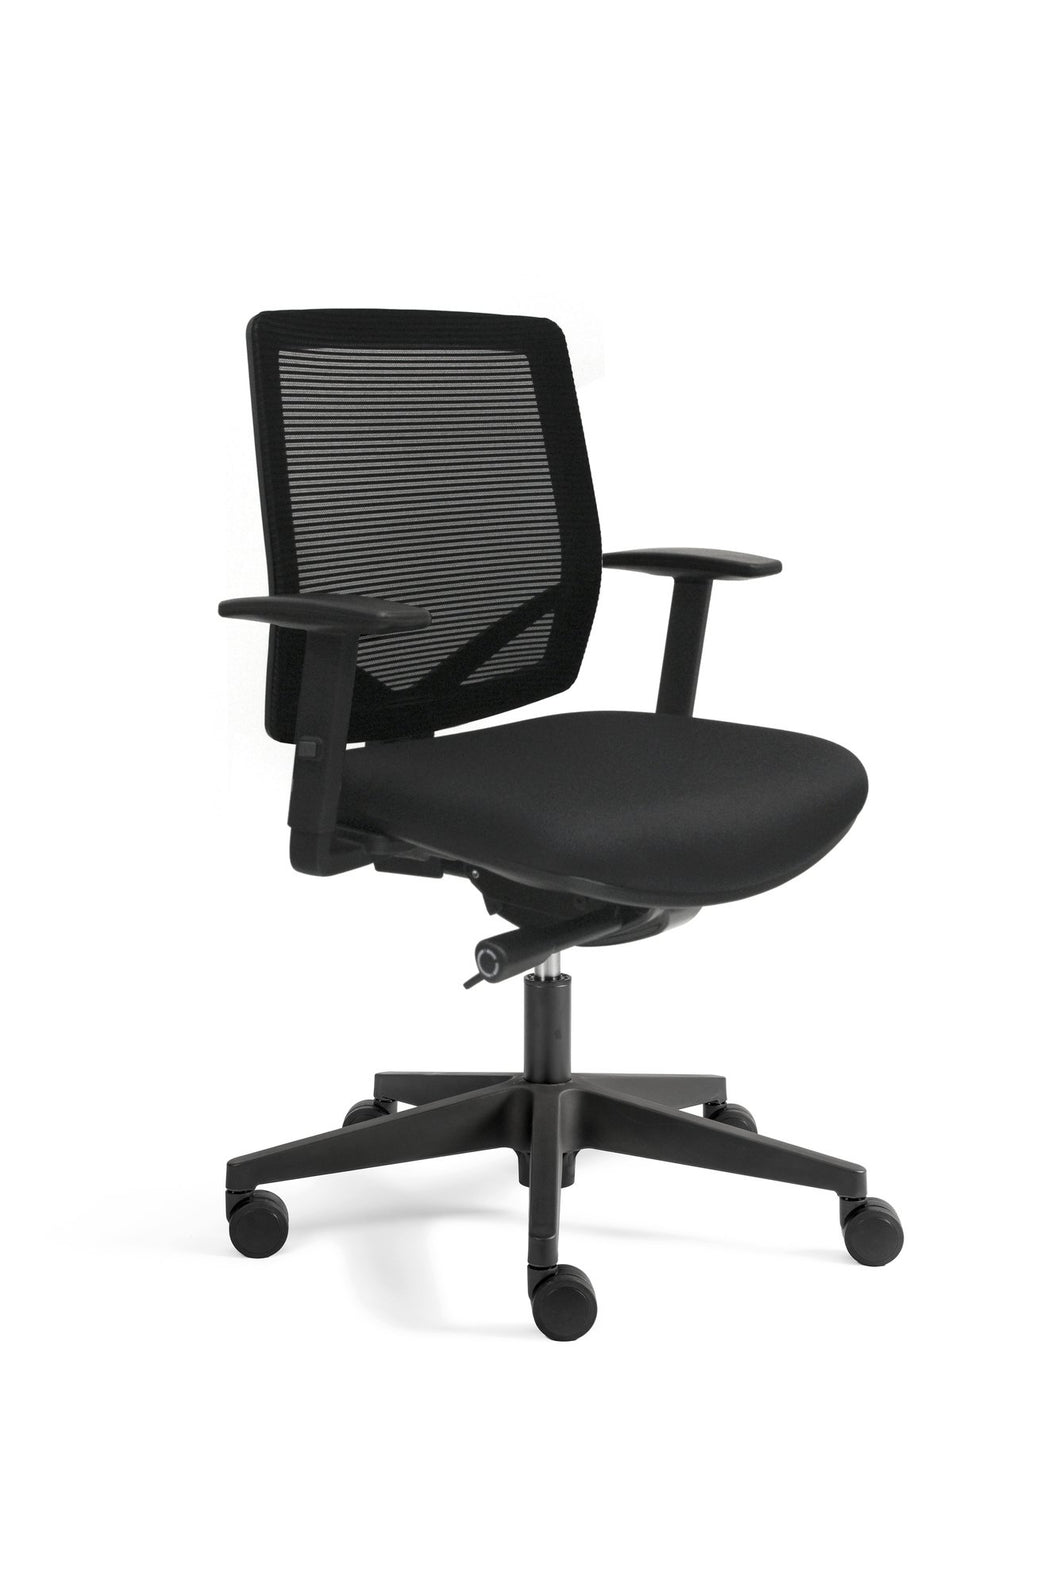 Ergonomic Office Chair 300 Mesh (N)EN 1335